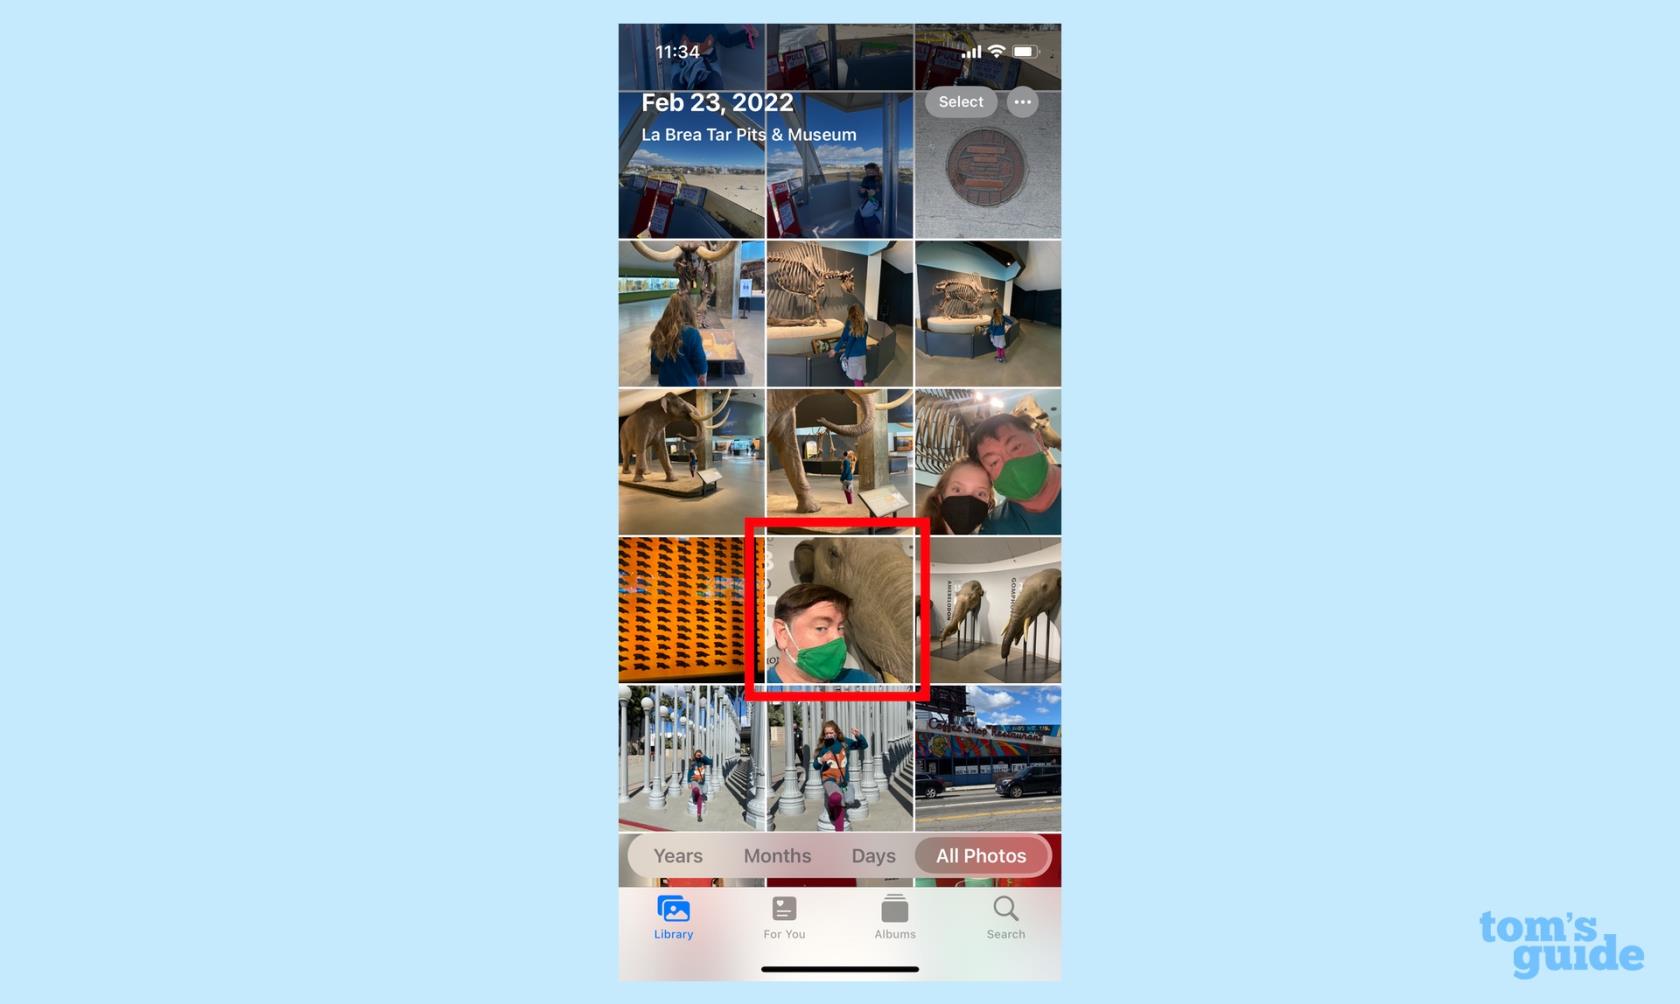 Comment enregistrer des photos dans votre bibliothèque de photos partagées iCloud à partir de l'application iPhone Camera